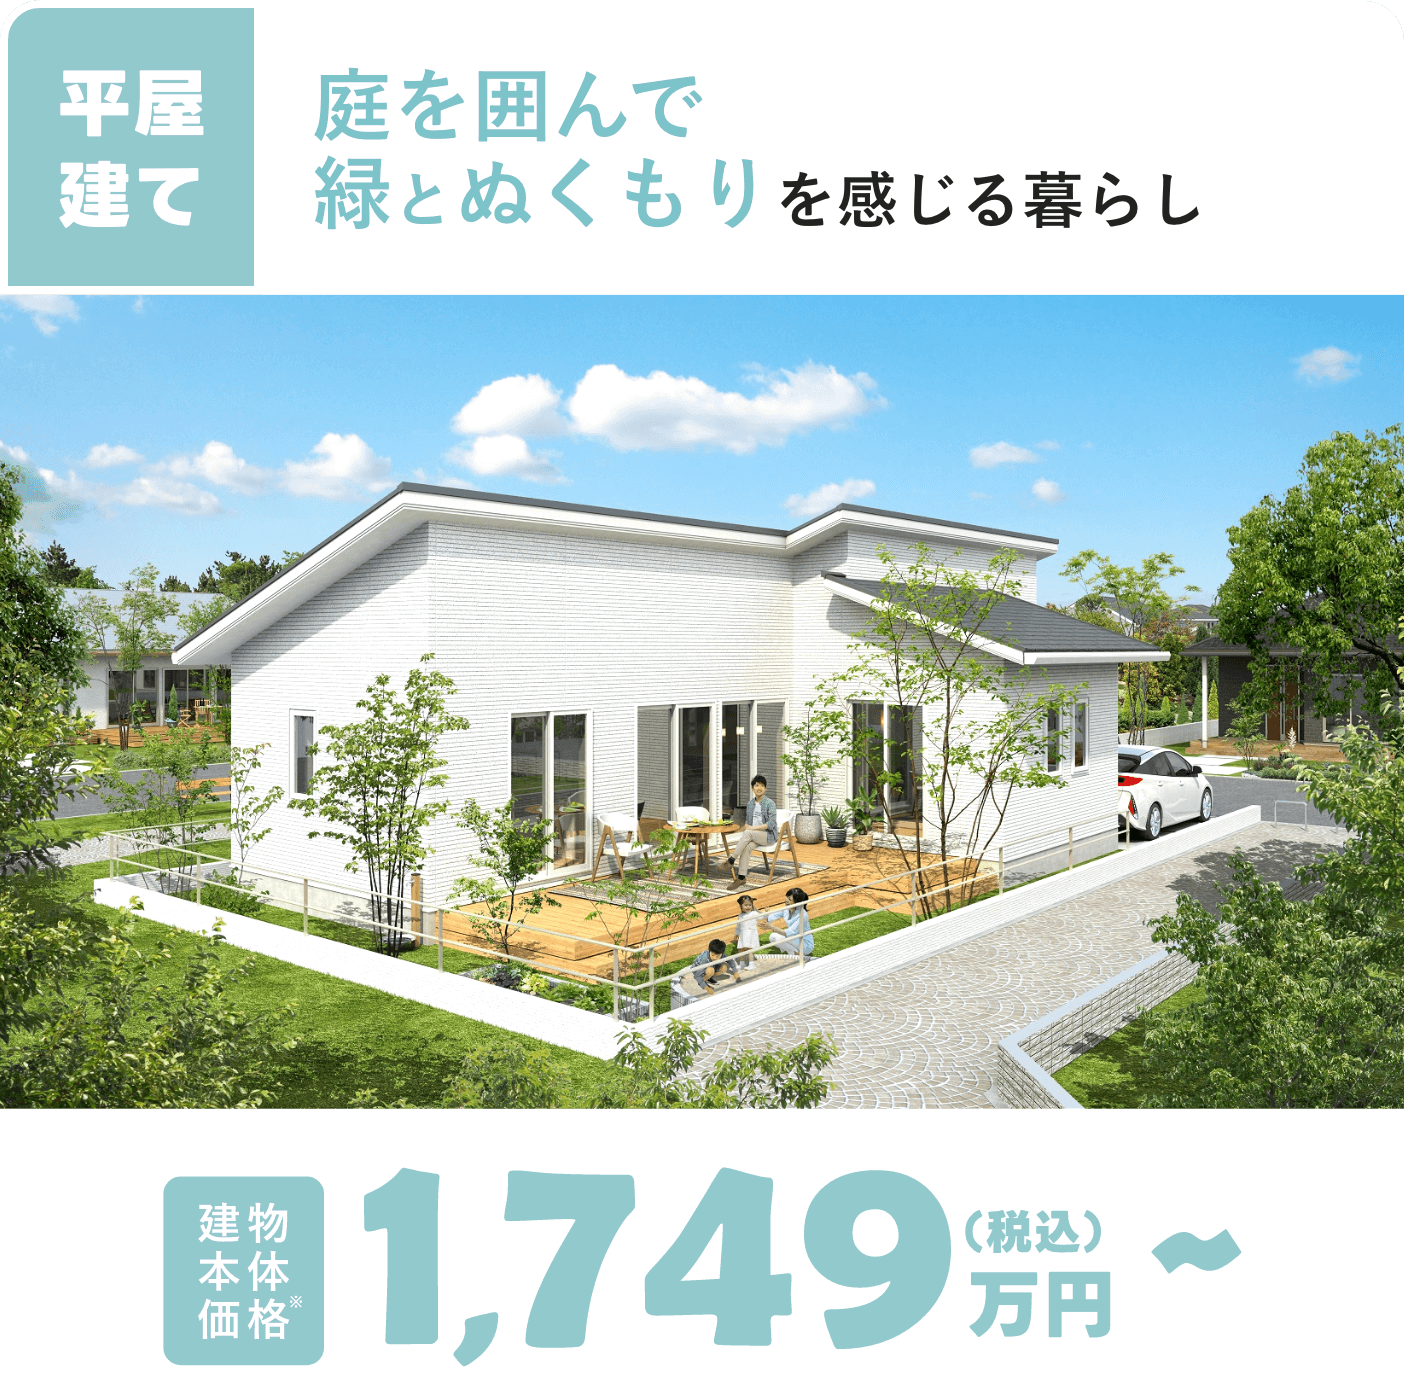 HELLO.03 flat 庭を囲んで緑とぬくもりを感じる暮らし 建物本体価格 1,749万円(税込)～